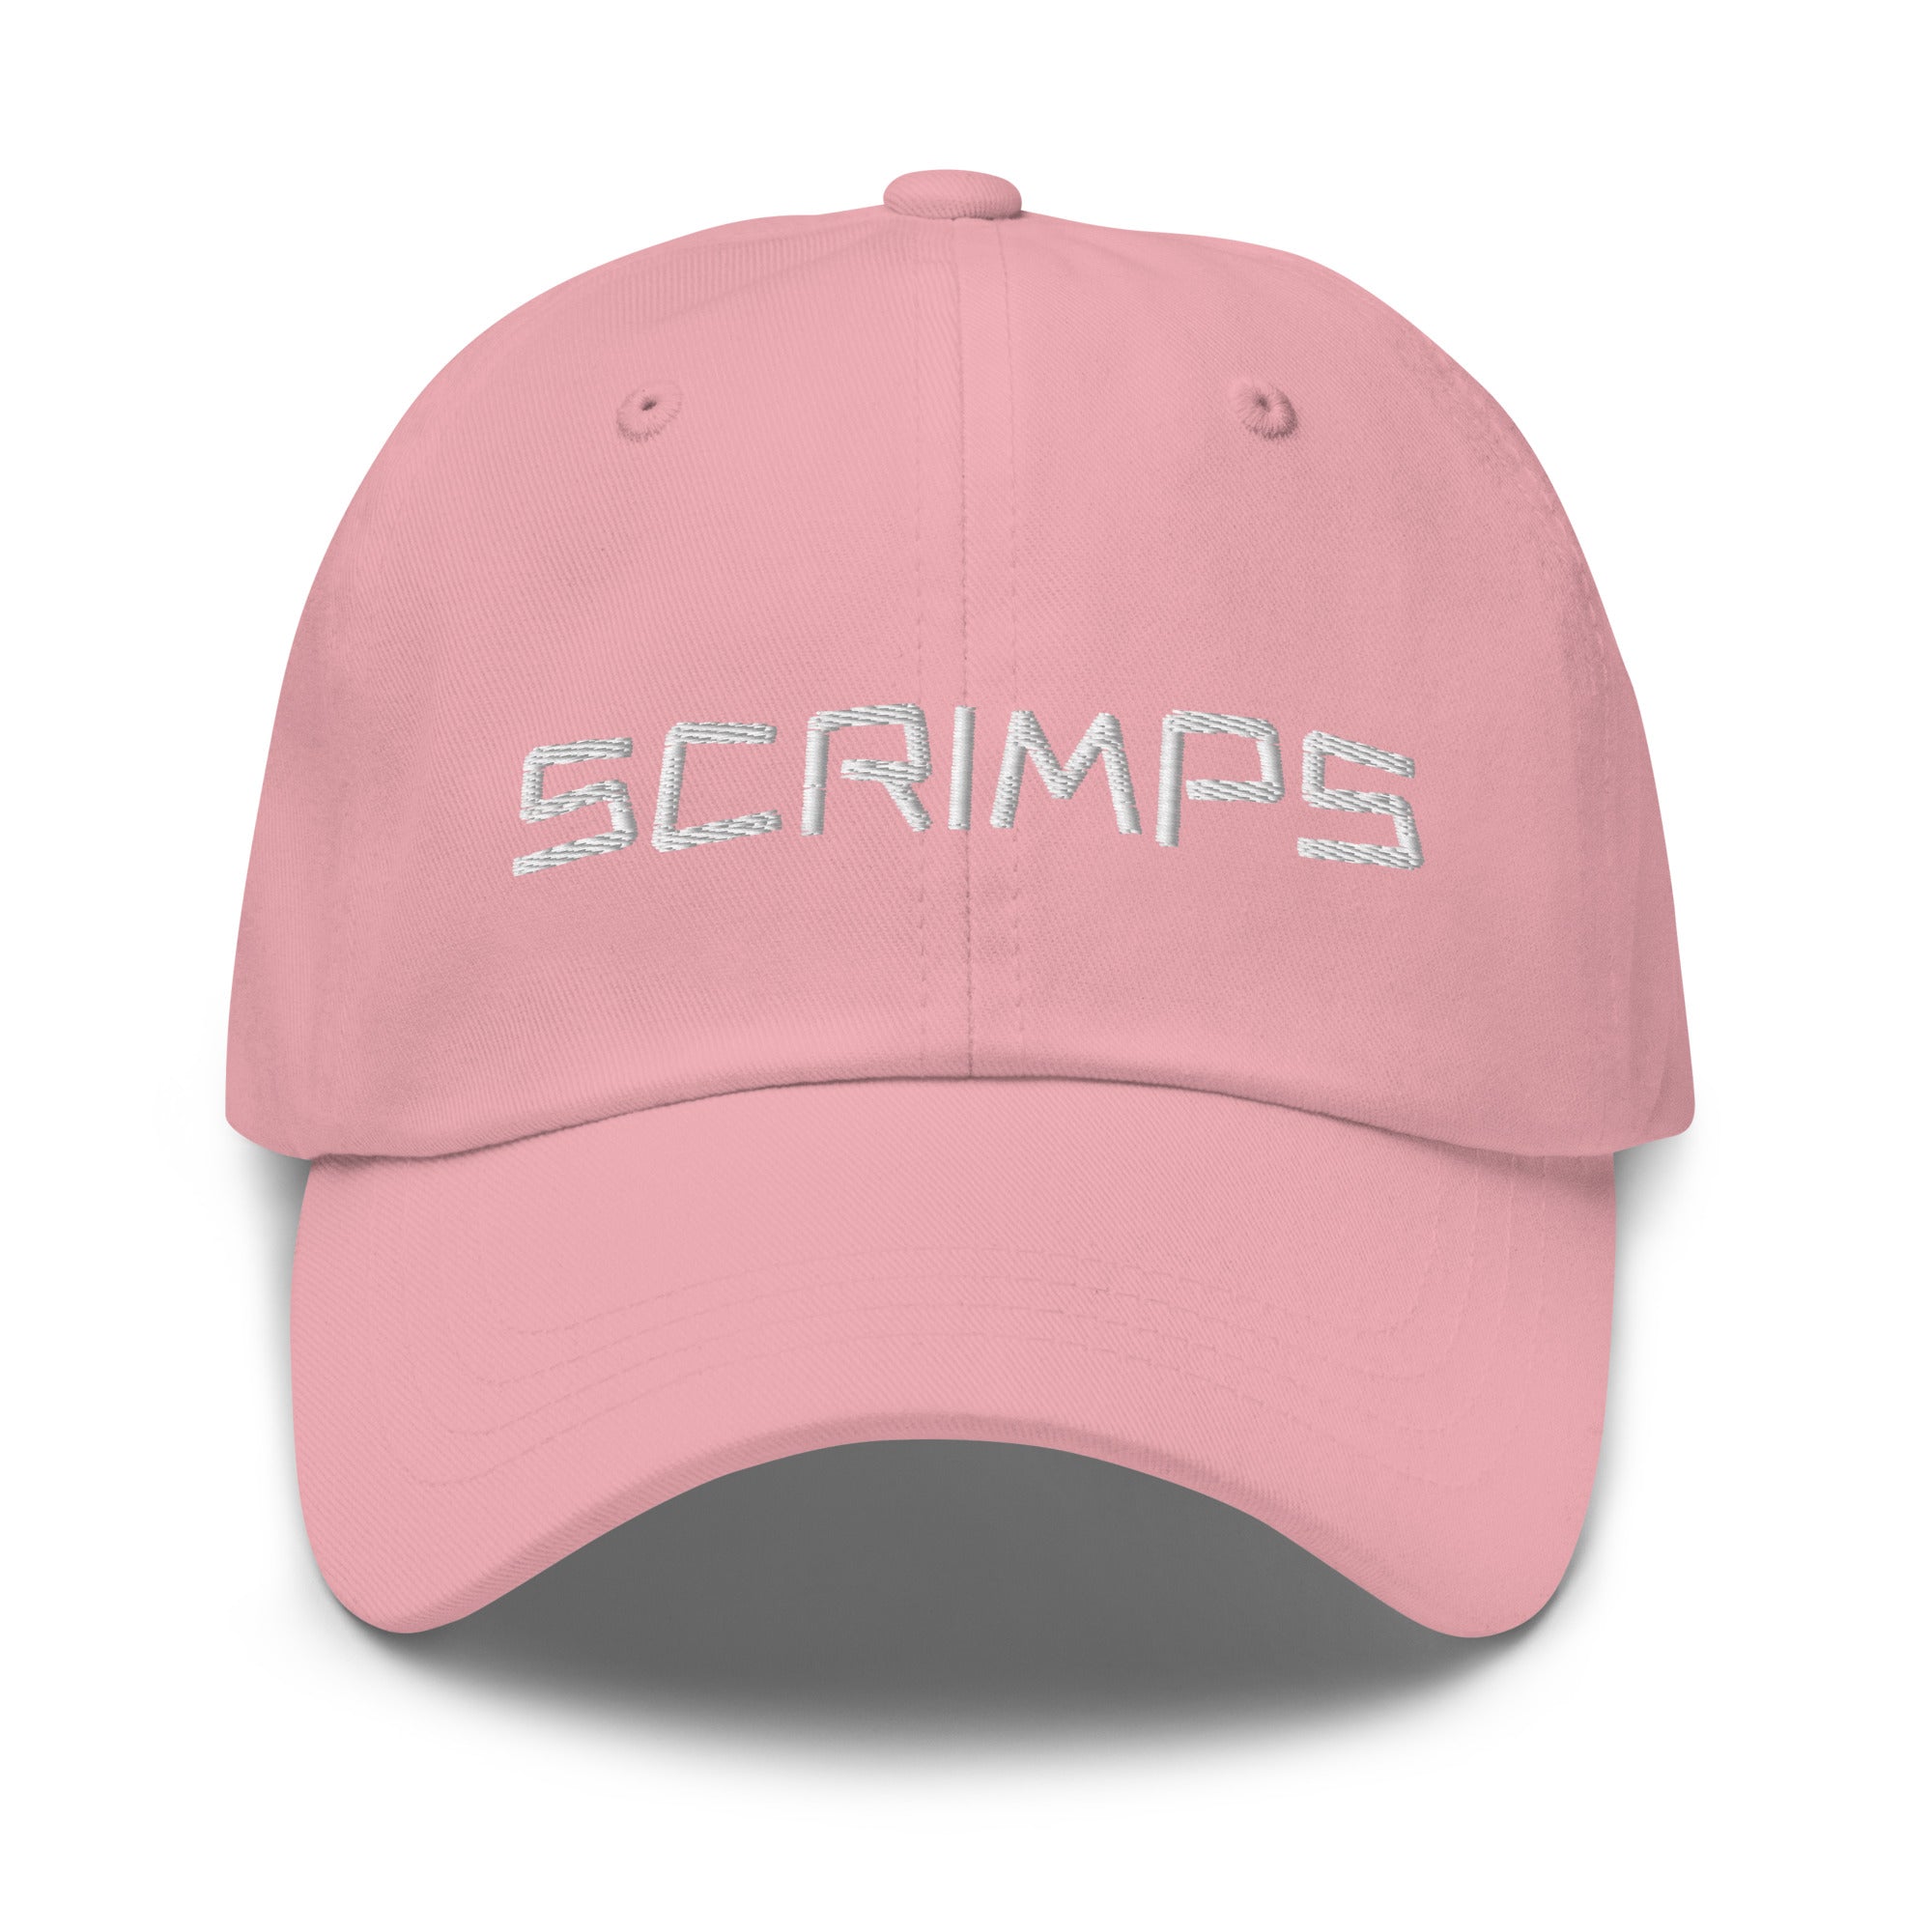 Scrimps Cap